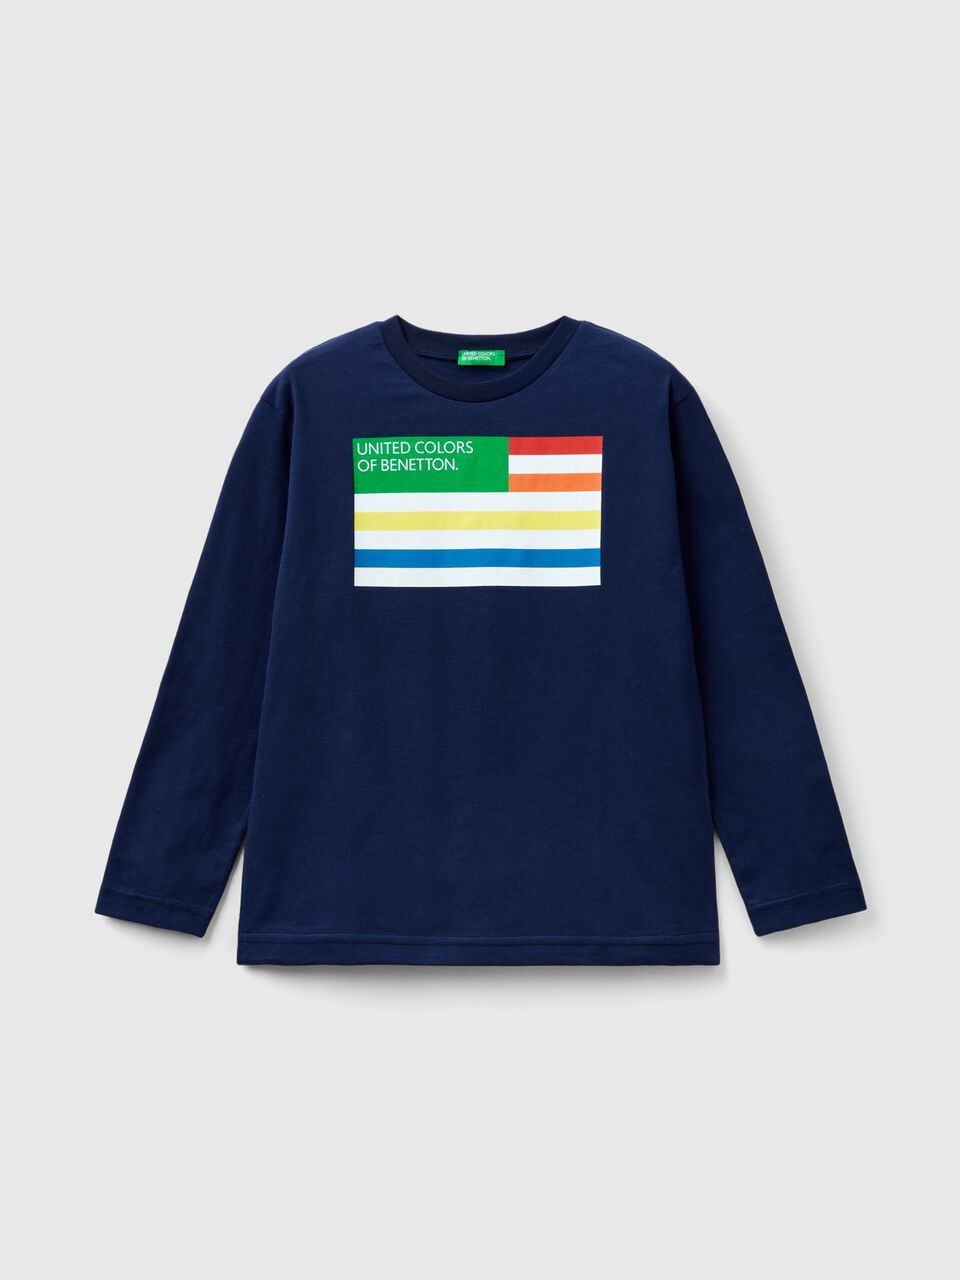 aus | Benetton Bio-Baumwolle Langärmeliges T-Shirt - Dunkelblau